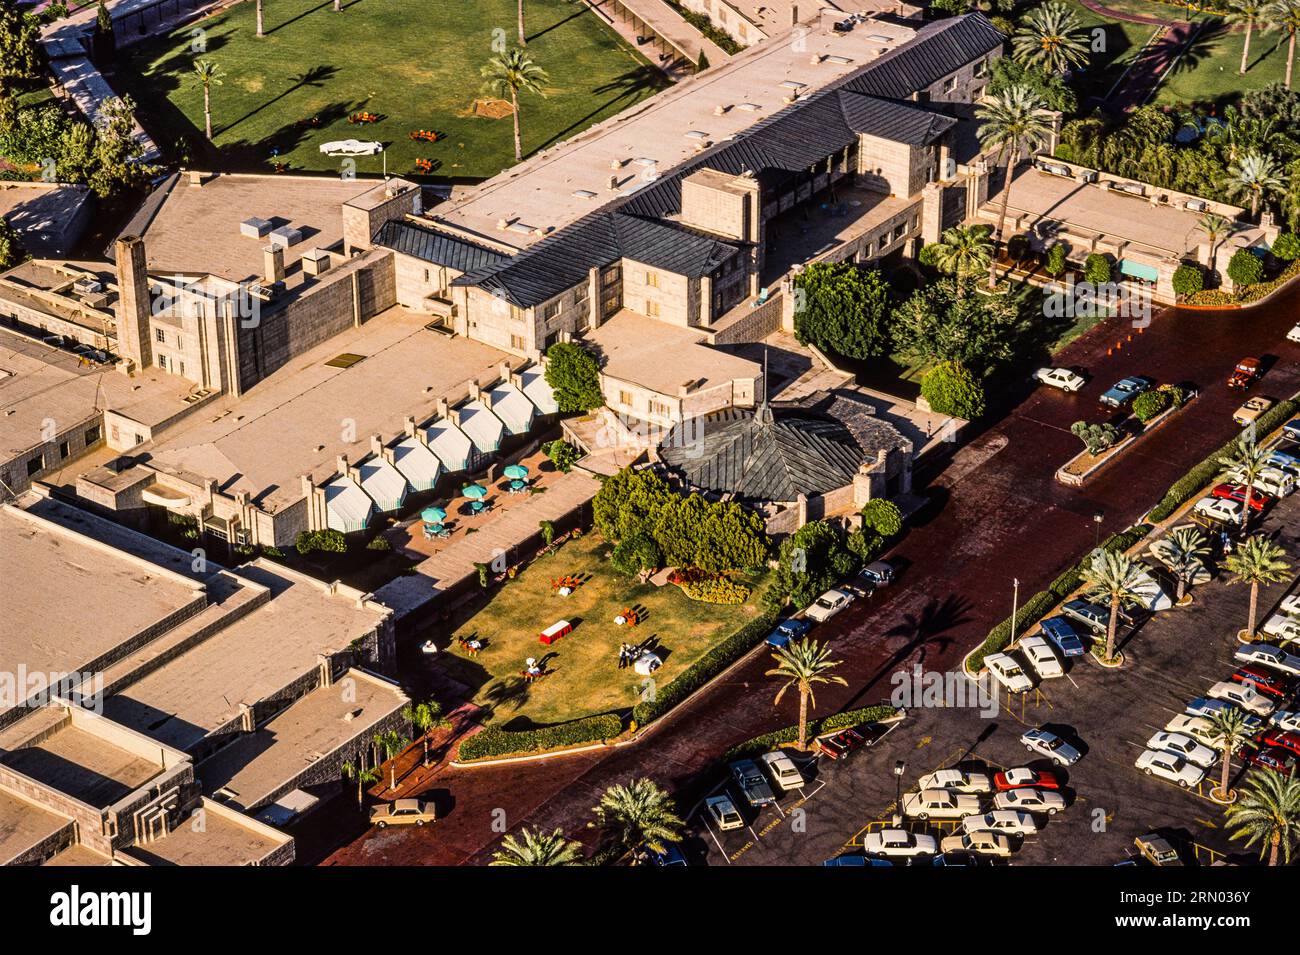 Arizona Biltmore Hotel   Phoenix, Arizona, USA Stock Photo